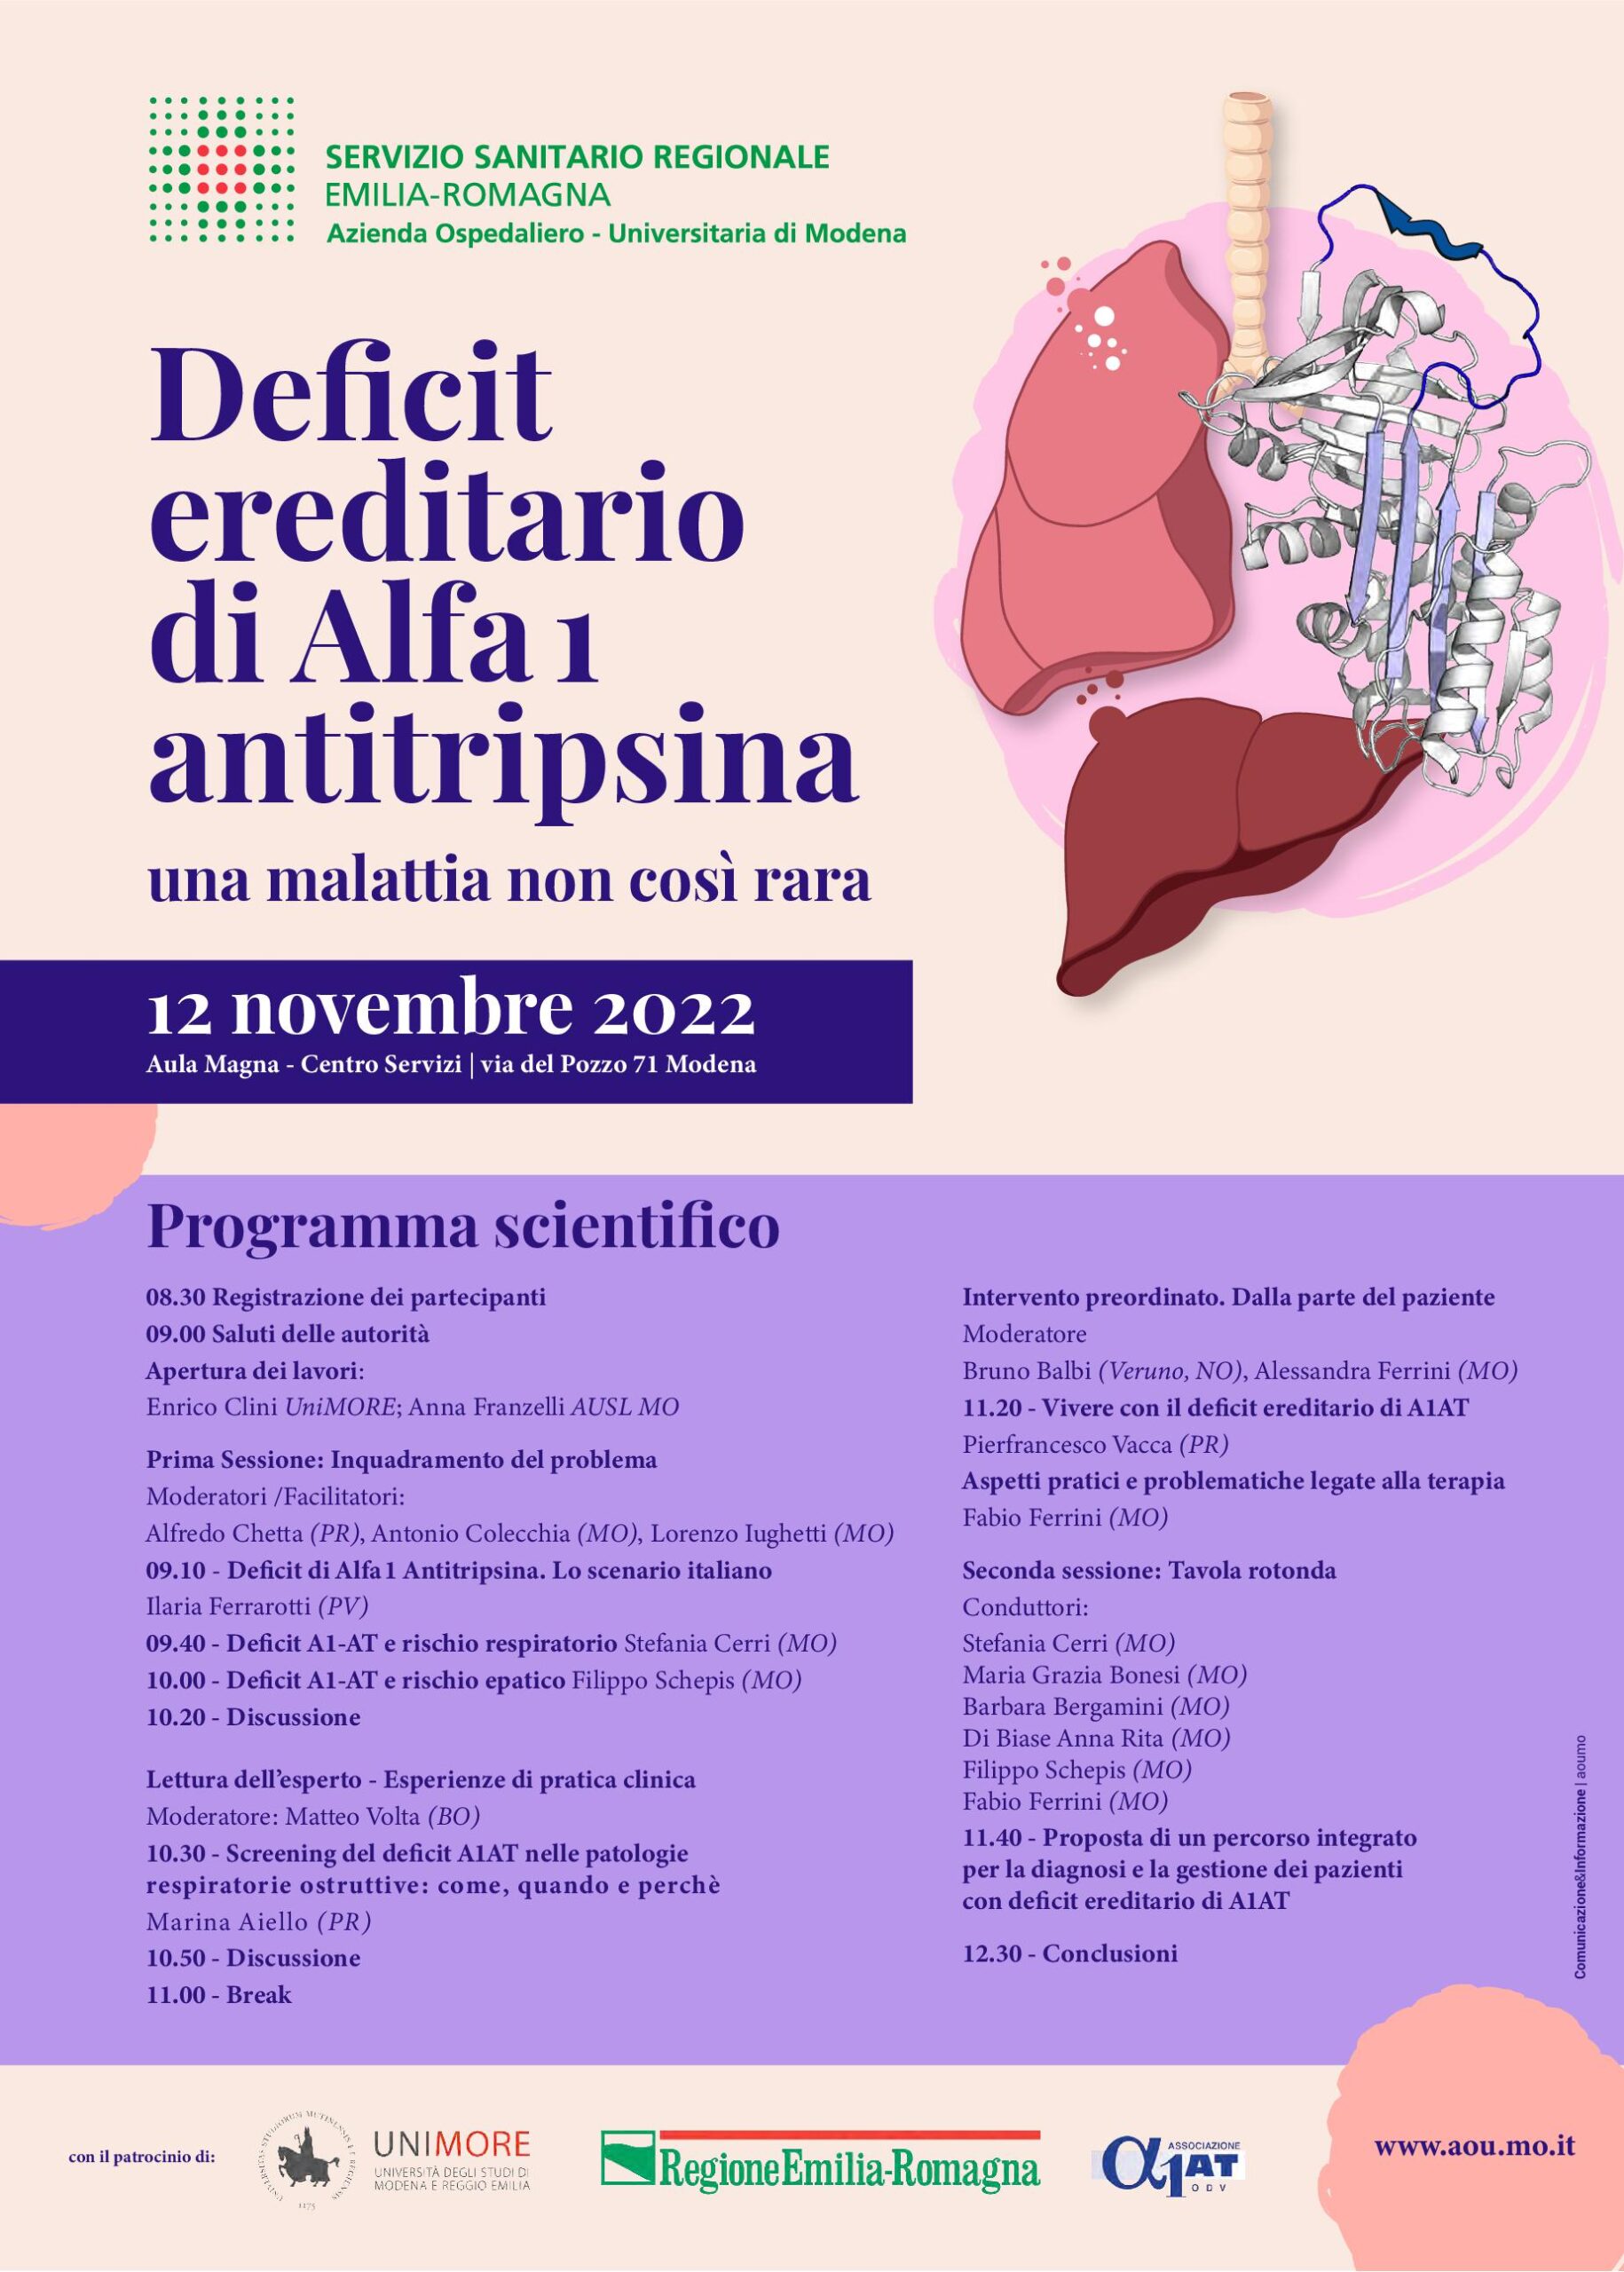 Deficit ereditario di Alfa1 Antitripsina